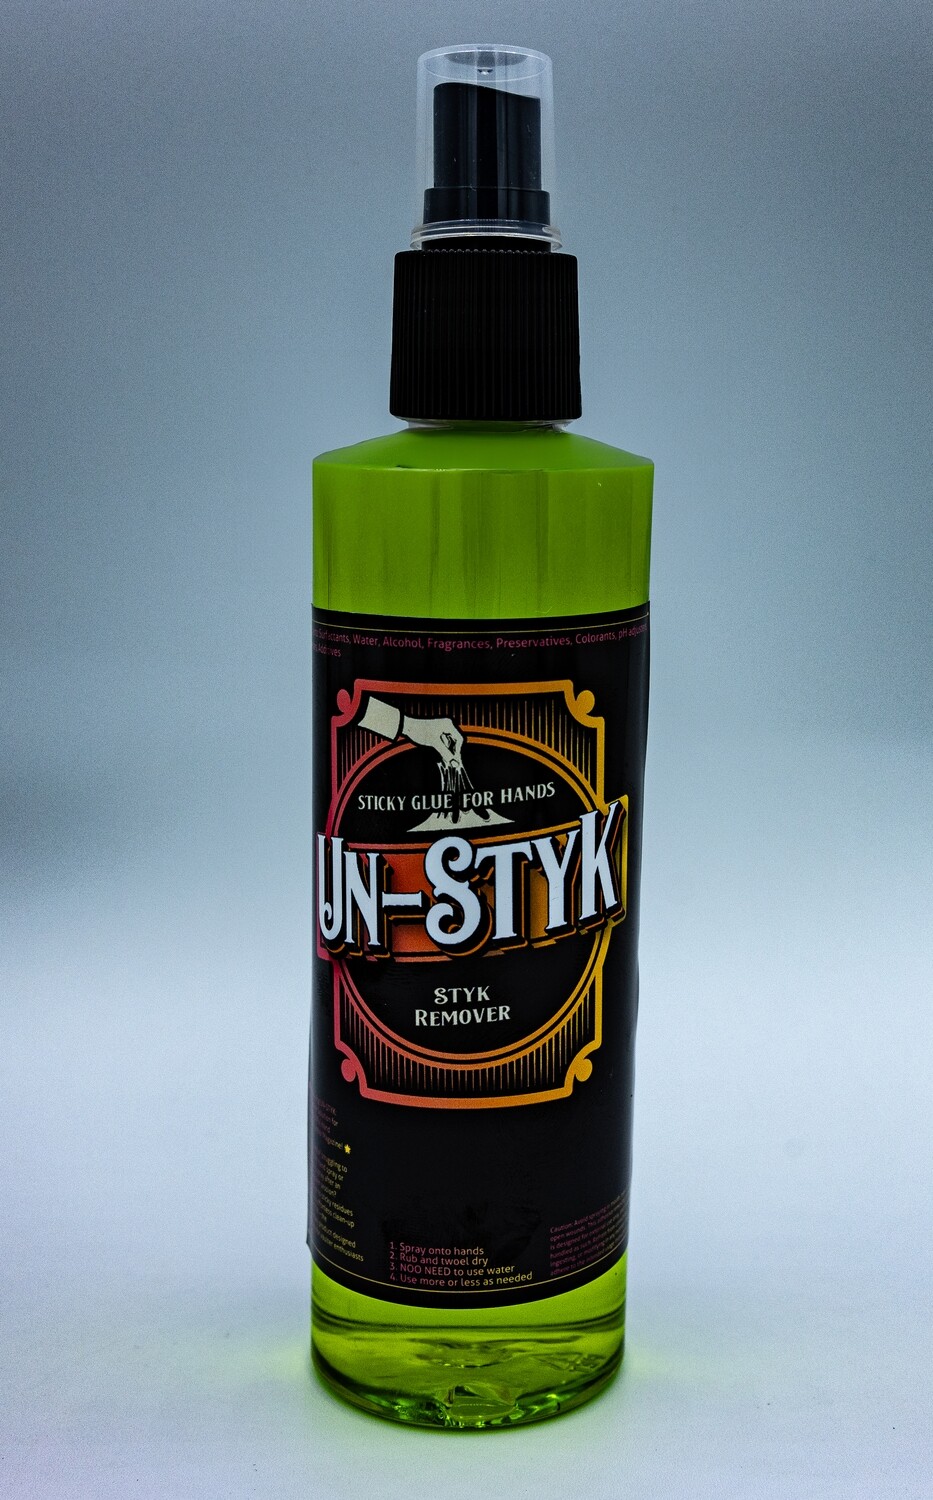 UN-STYK by Vaulter Magazine 120 ml Spray